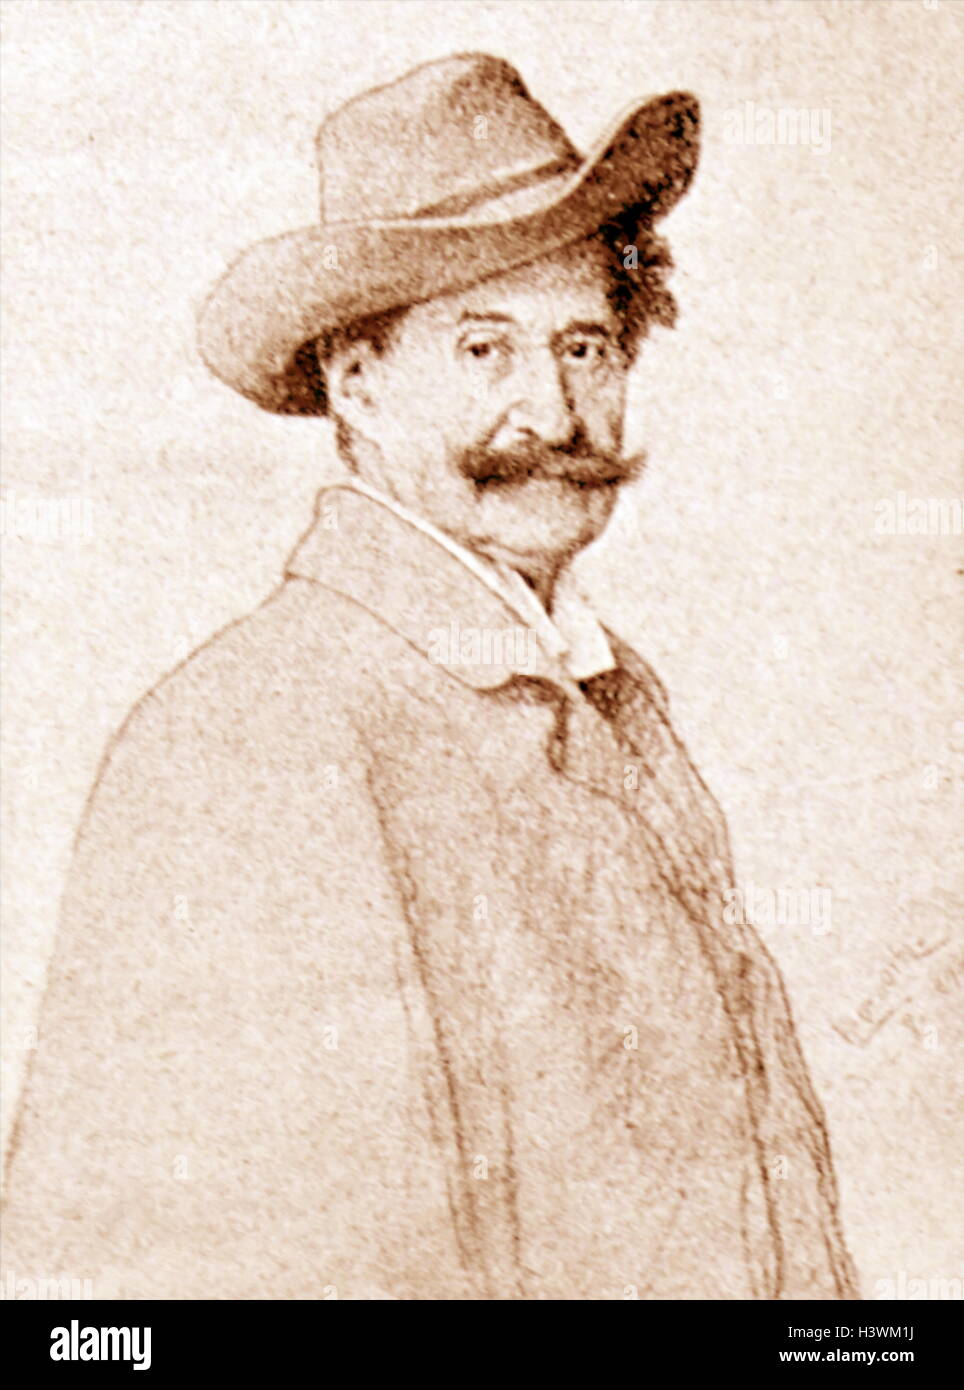 Porträt von Johann Strauss II (1825 – 1899), ein österreichischer Komponist von Unterhaltungsmusik. Vom 19. Jahrhundert Stockfoto